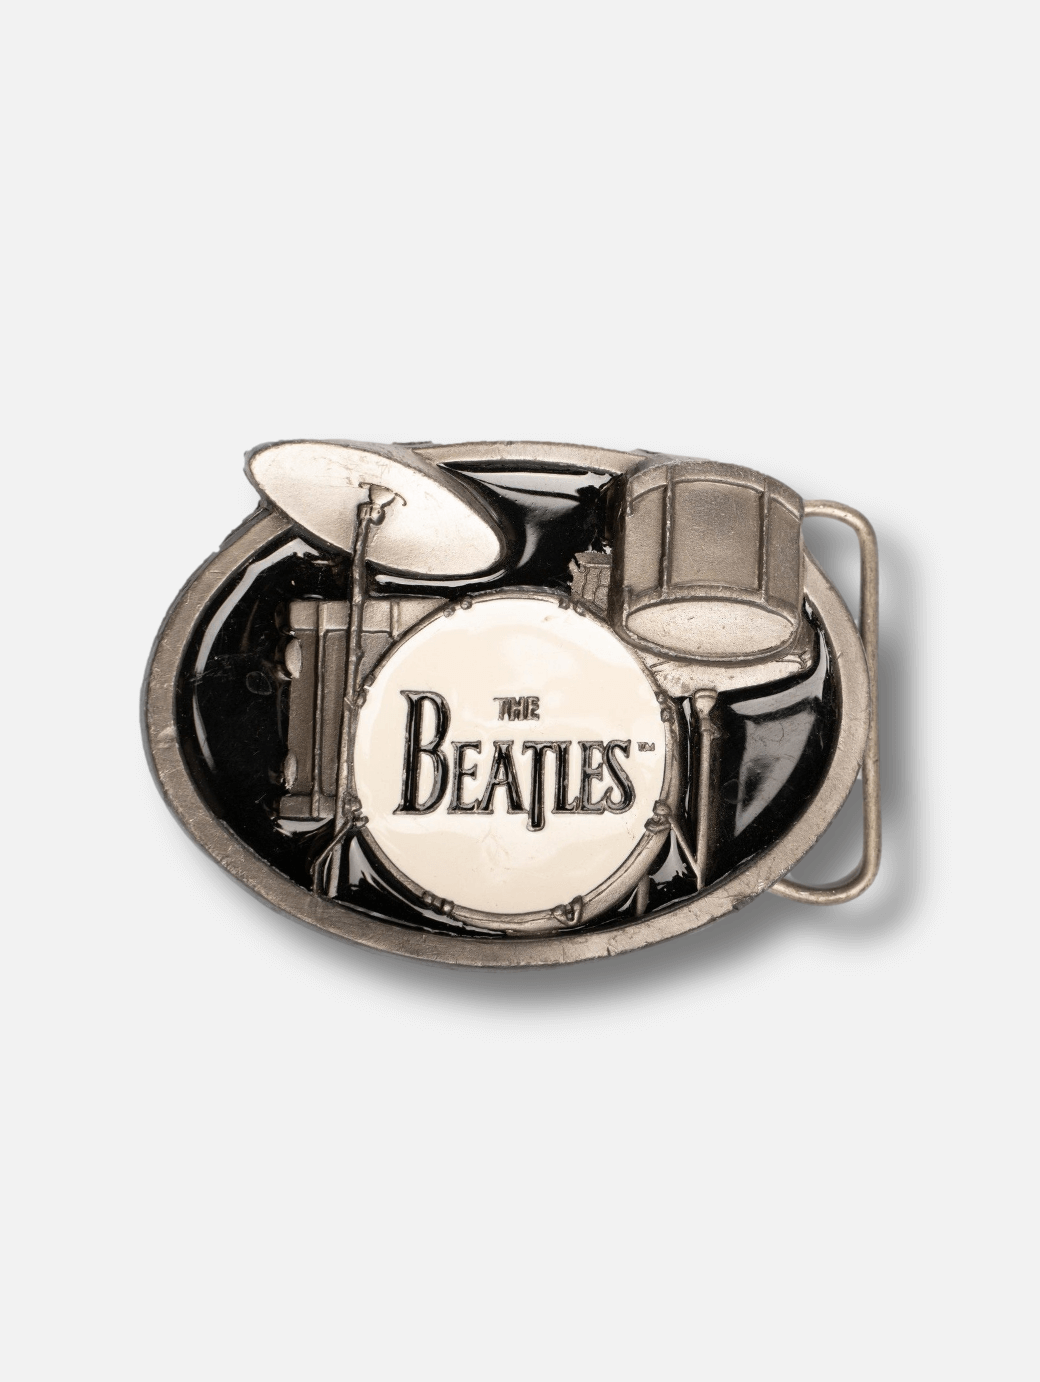 The Beatles buckle - Drum set Vintage buckle